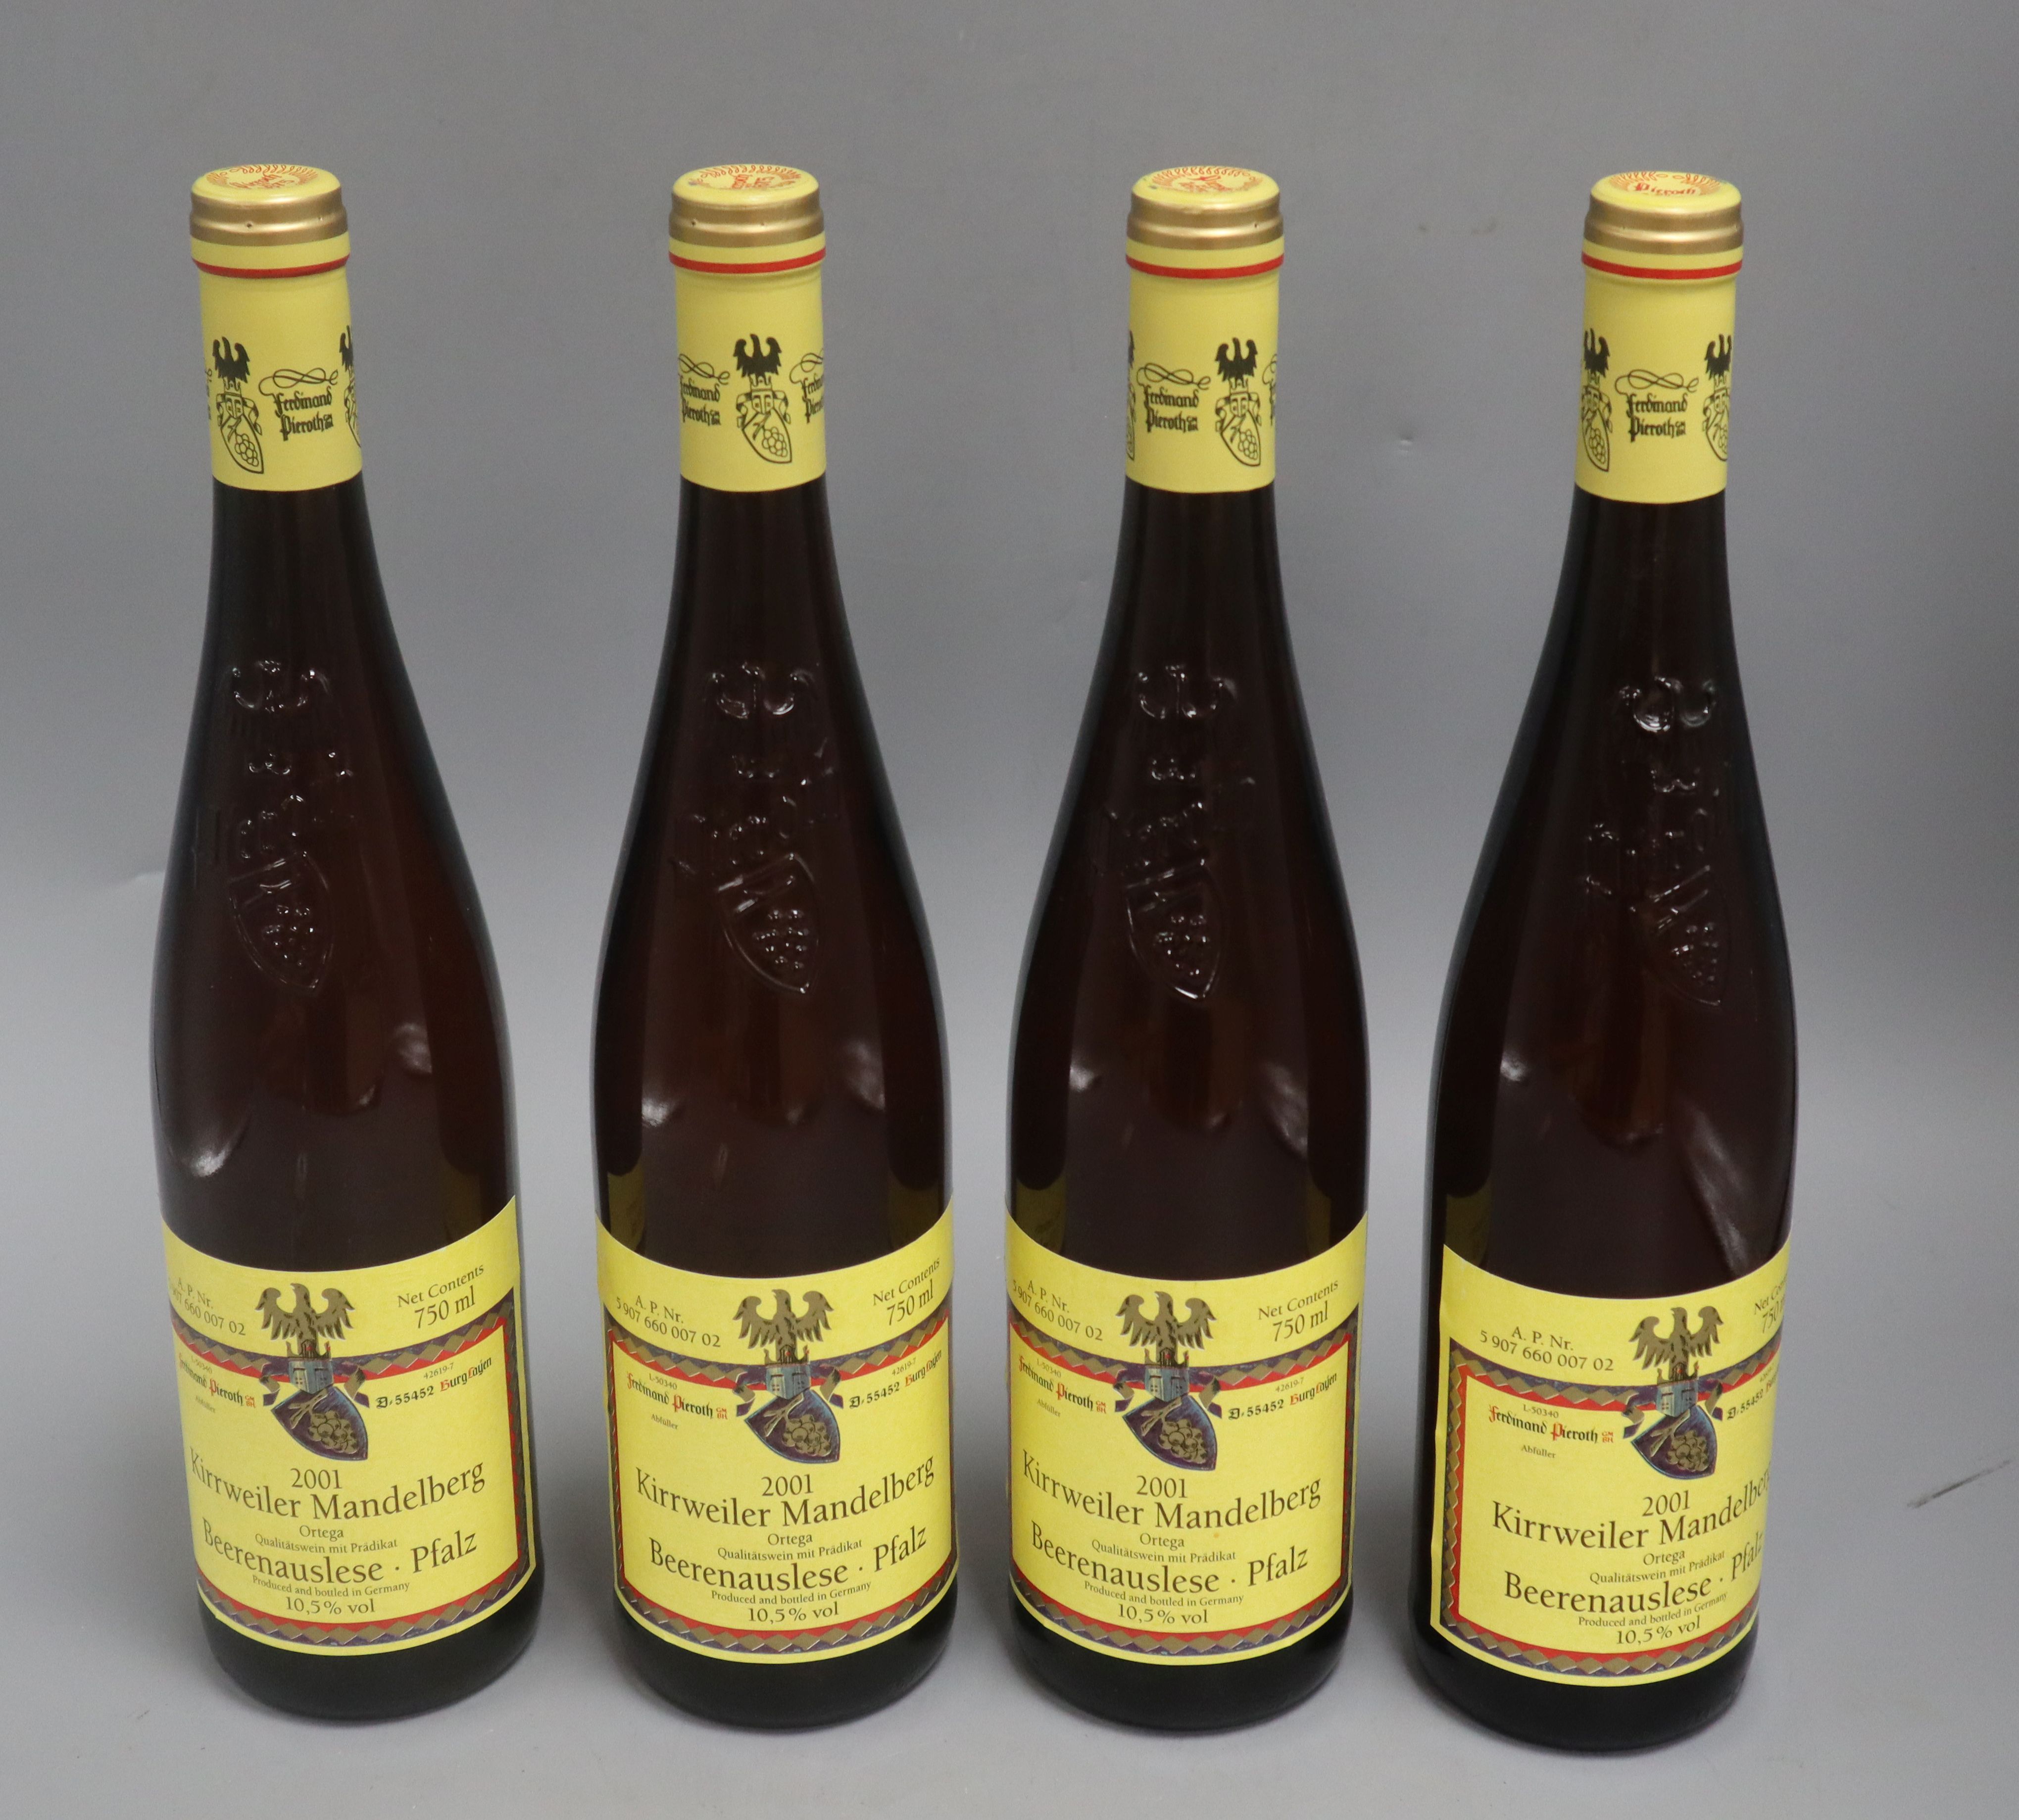 Four bottles Kirrweiler Mandelberg Ortega Beerenauslese 2001